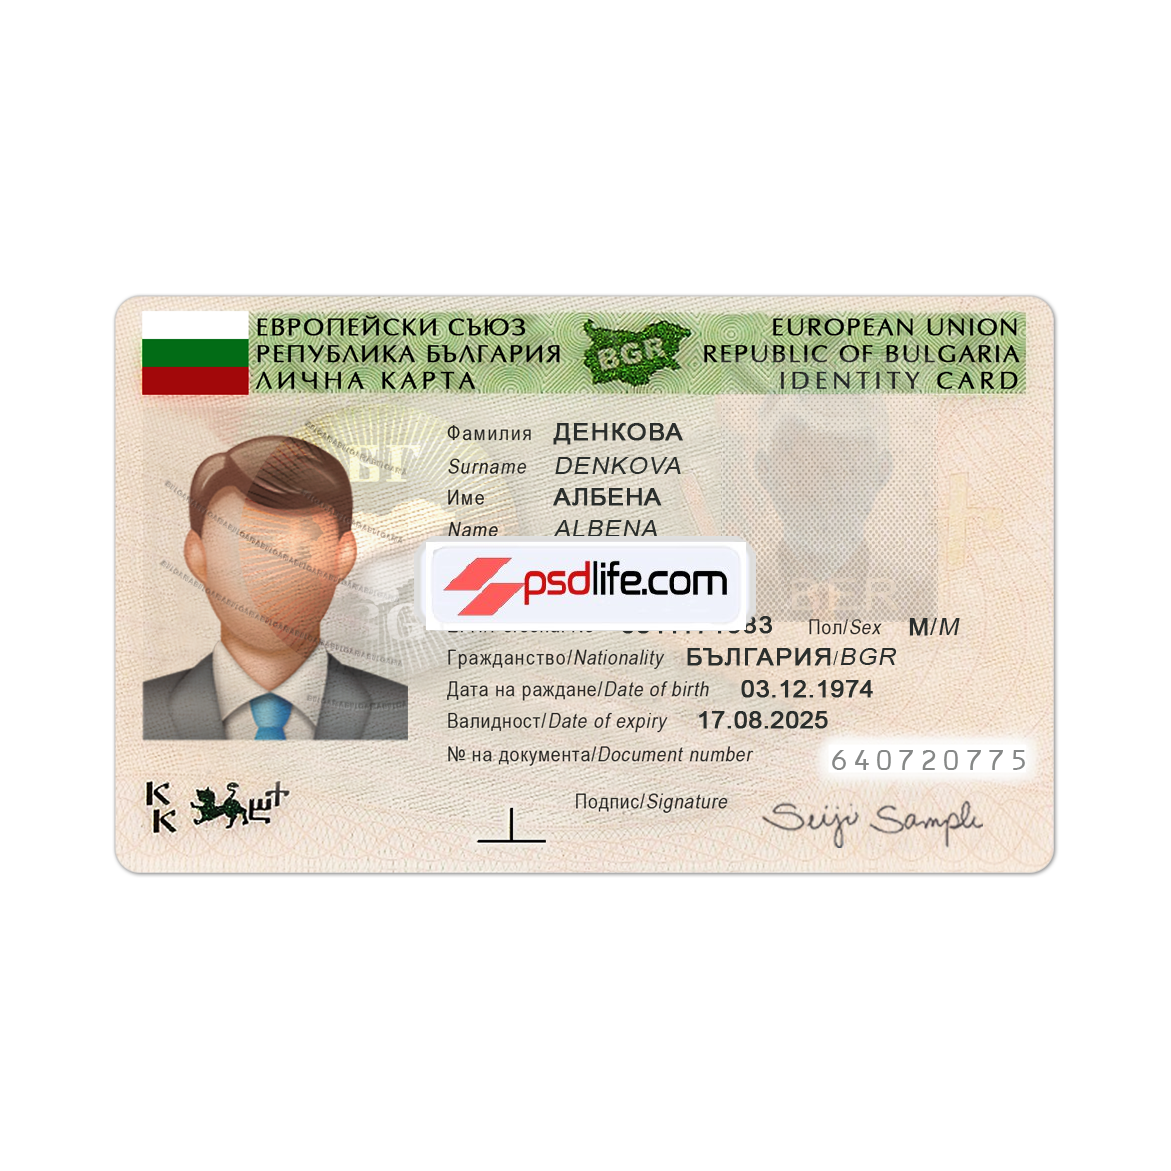 Bulgaria ID card psd template full editabale | Bulgaria id card Template photoshop use for | ID Card Number Bulgaria | Безплатно изтегляне на редактируем psd шаблон за фалшива лична карта на България